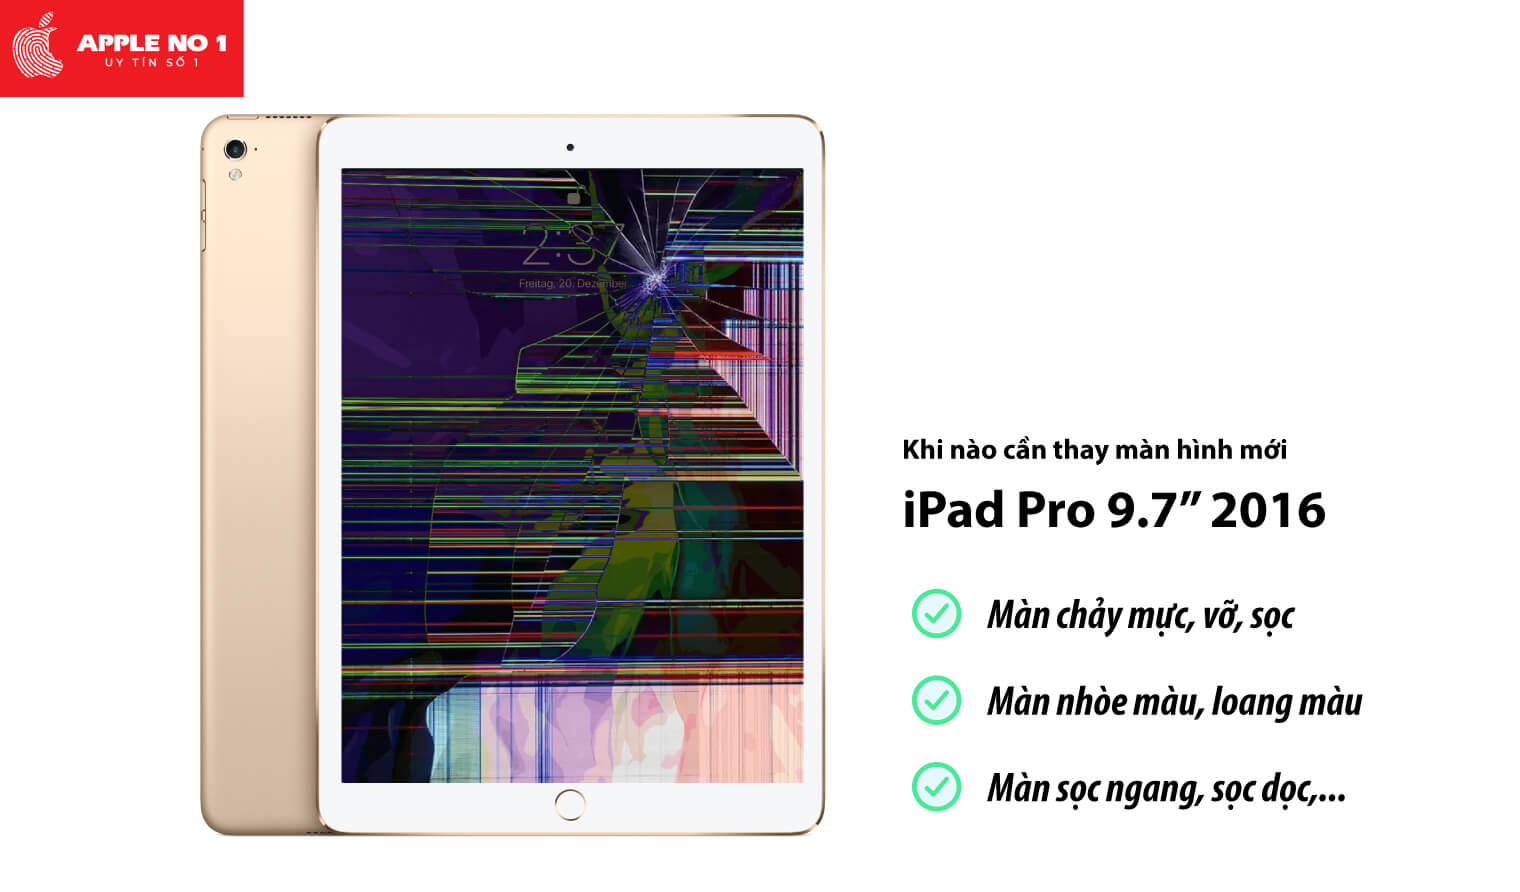 Thay màn hình iPad Pro 9.7 inch 2016 khi nào?